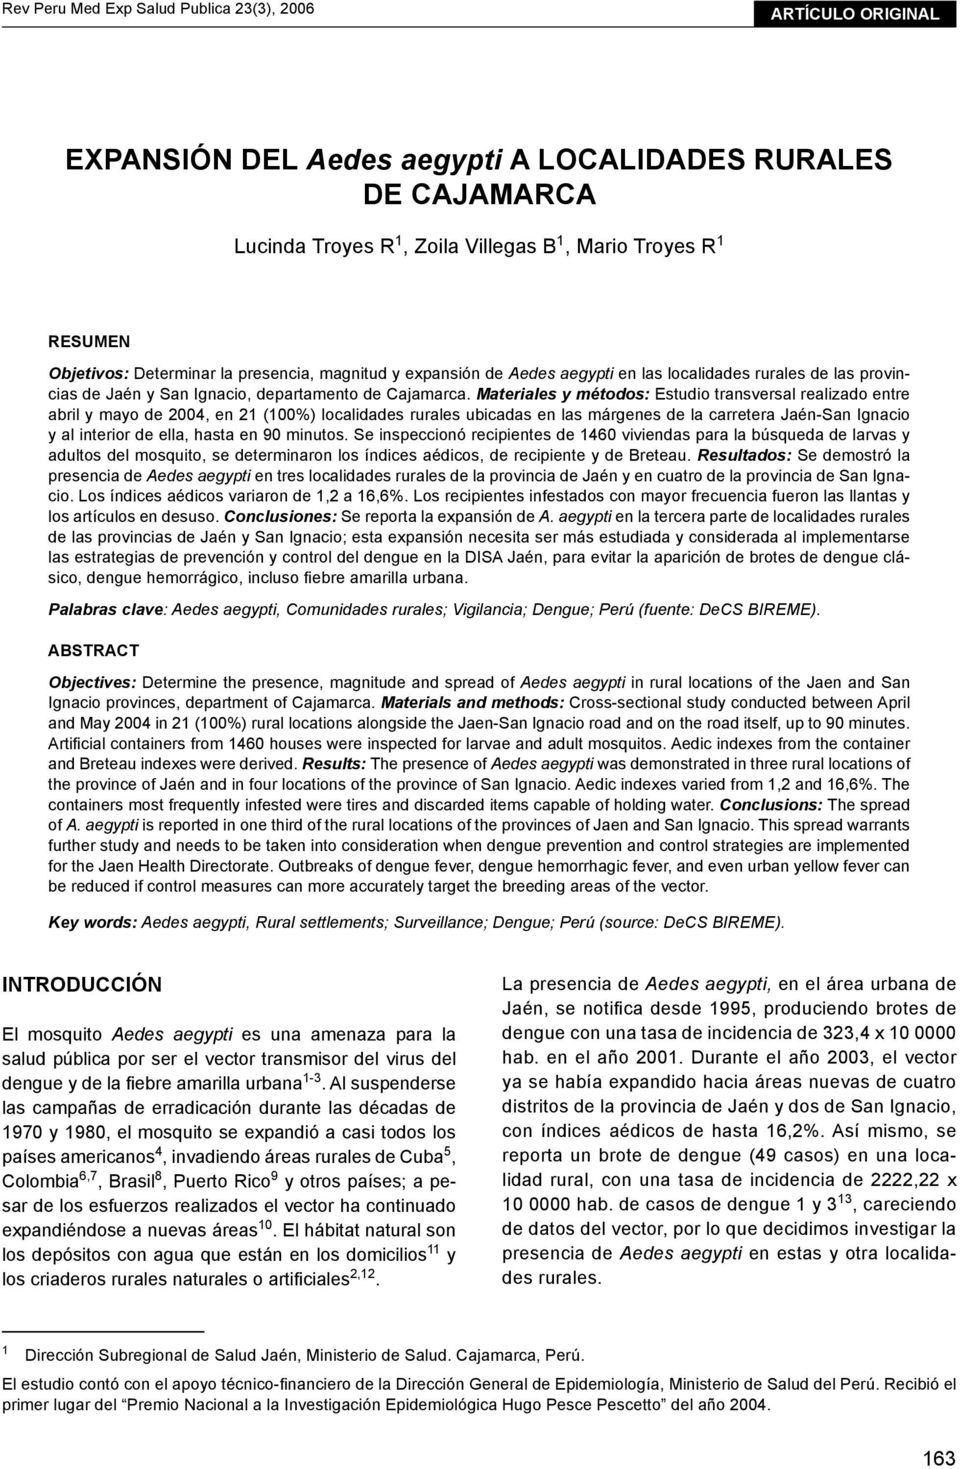 expansión de Aedes aegypti en las localidades rurales de las provincias de Jaén y San Ignacio, departamento de Cajamarca.